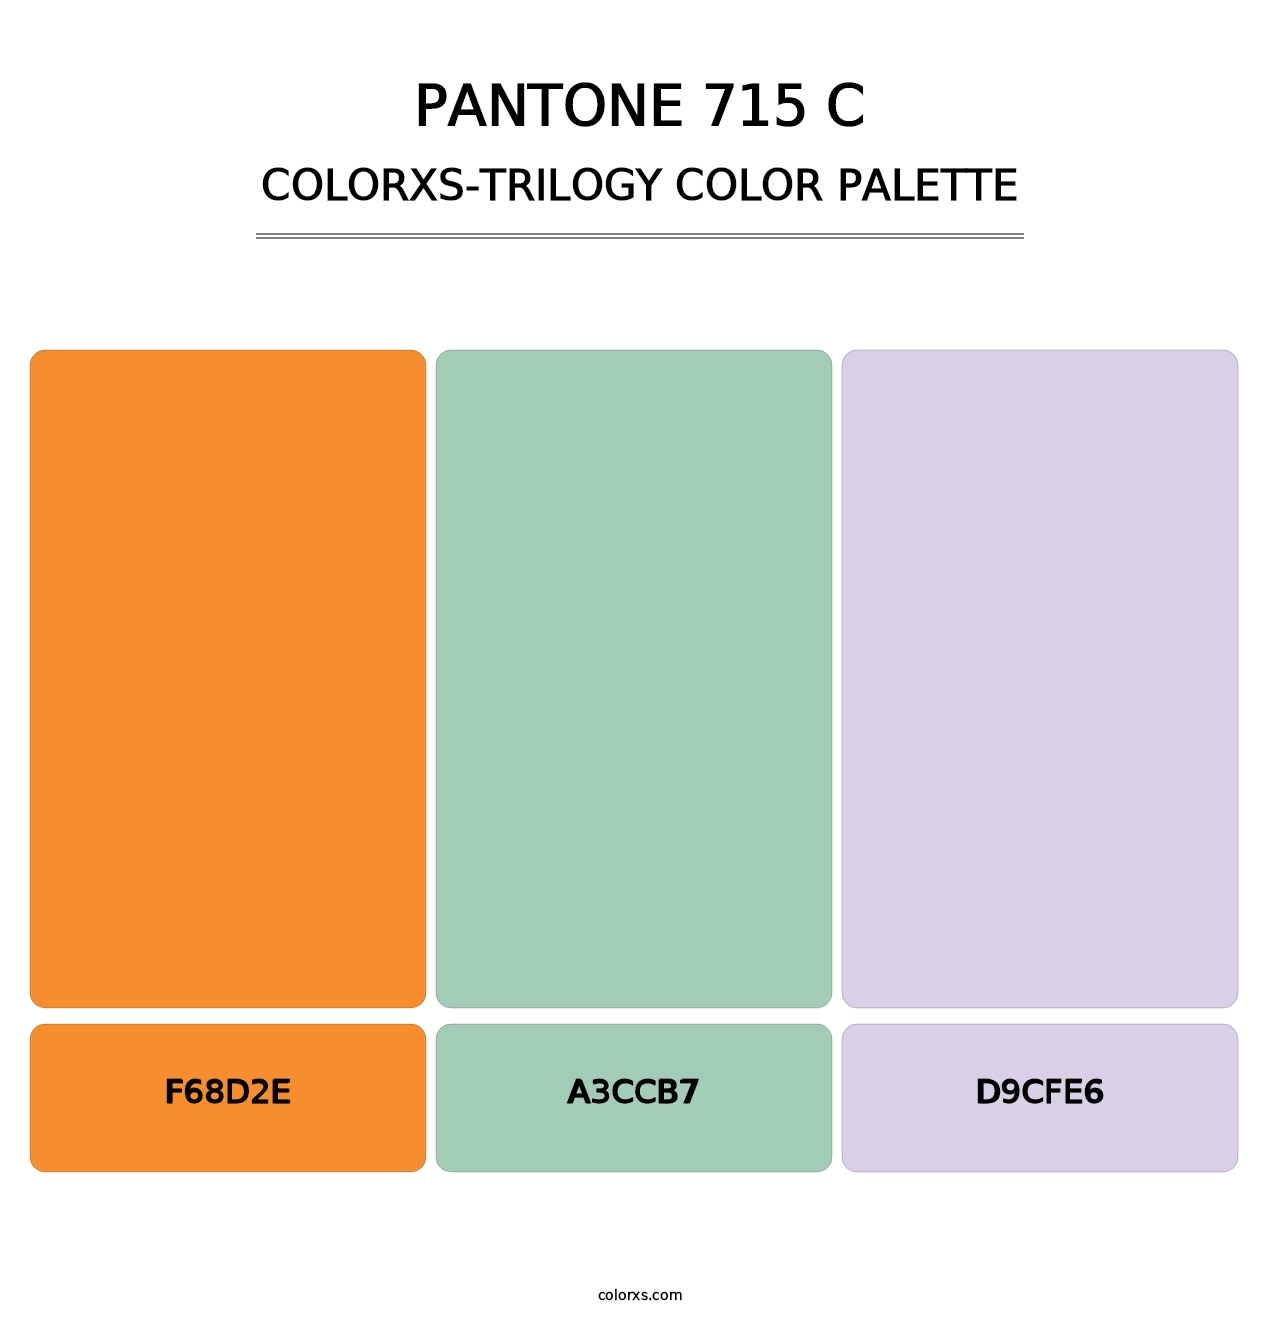 PANTONE 715 C - Colorxs Trilogy Palette